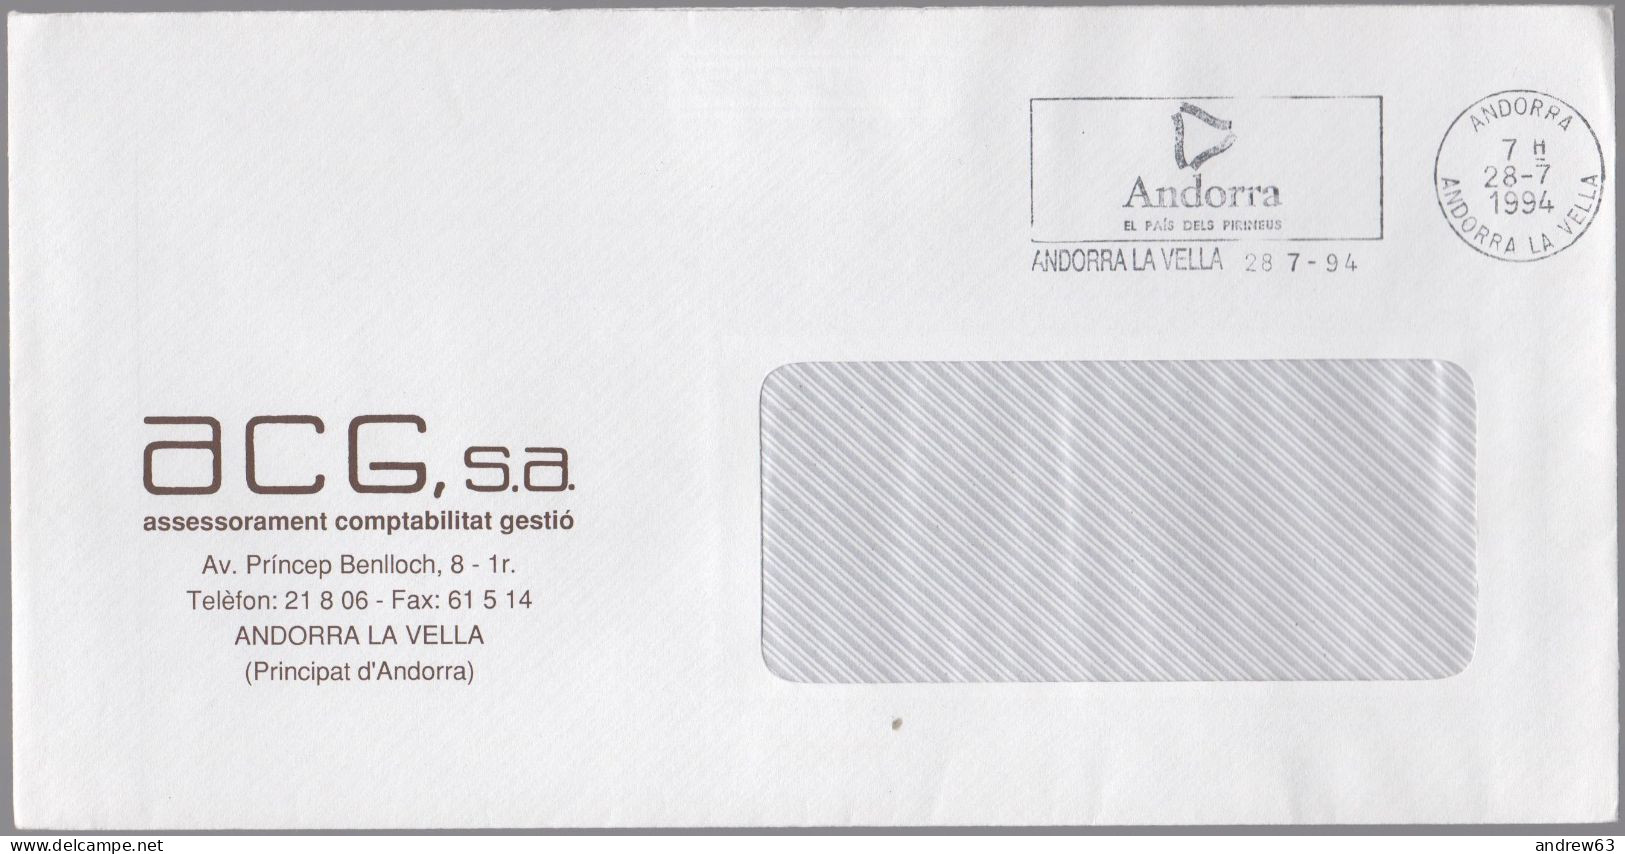 ANDORRA - ANDORRE - 1994 - Lettre En Franchise + Flamme - ACG, S.a. - Viaggiata Da Andorra La Vella - Briefe U. Dokumente